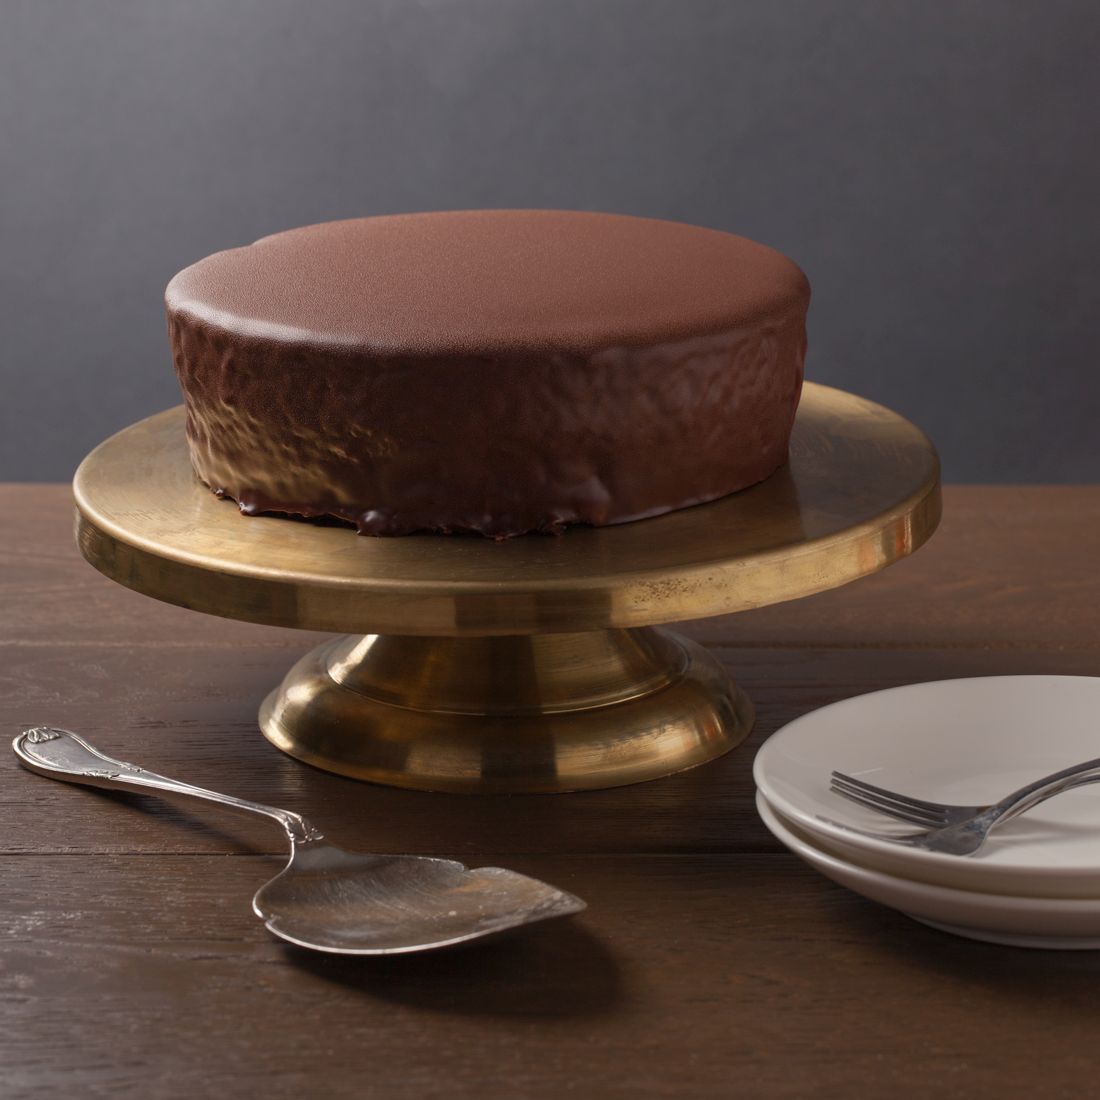 עוגת שוקולד של הבייקרי, 100% שוקולד וולרונה בציפוי גנאש